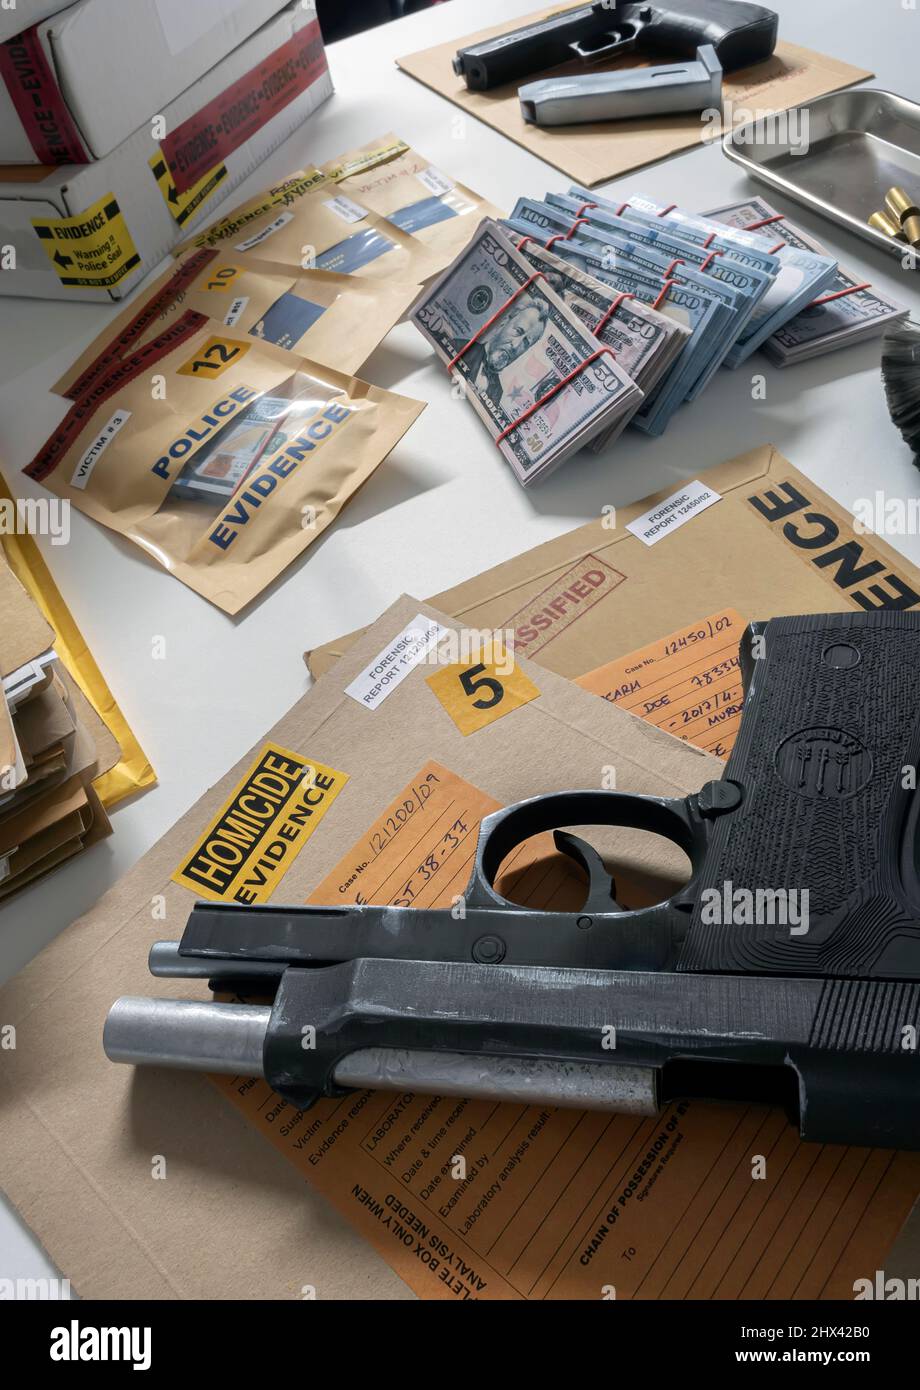 Argent et armes dans le laboratoire de crime pour l'enquête, image conceptuelle Banque D'Images